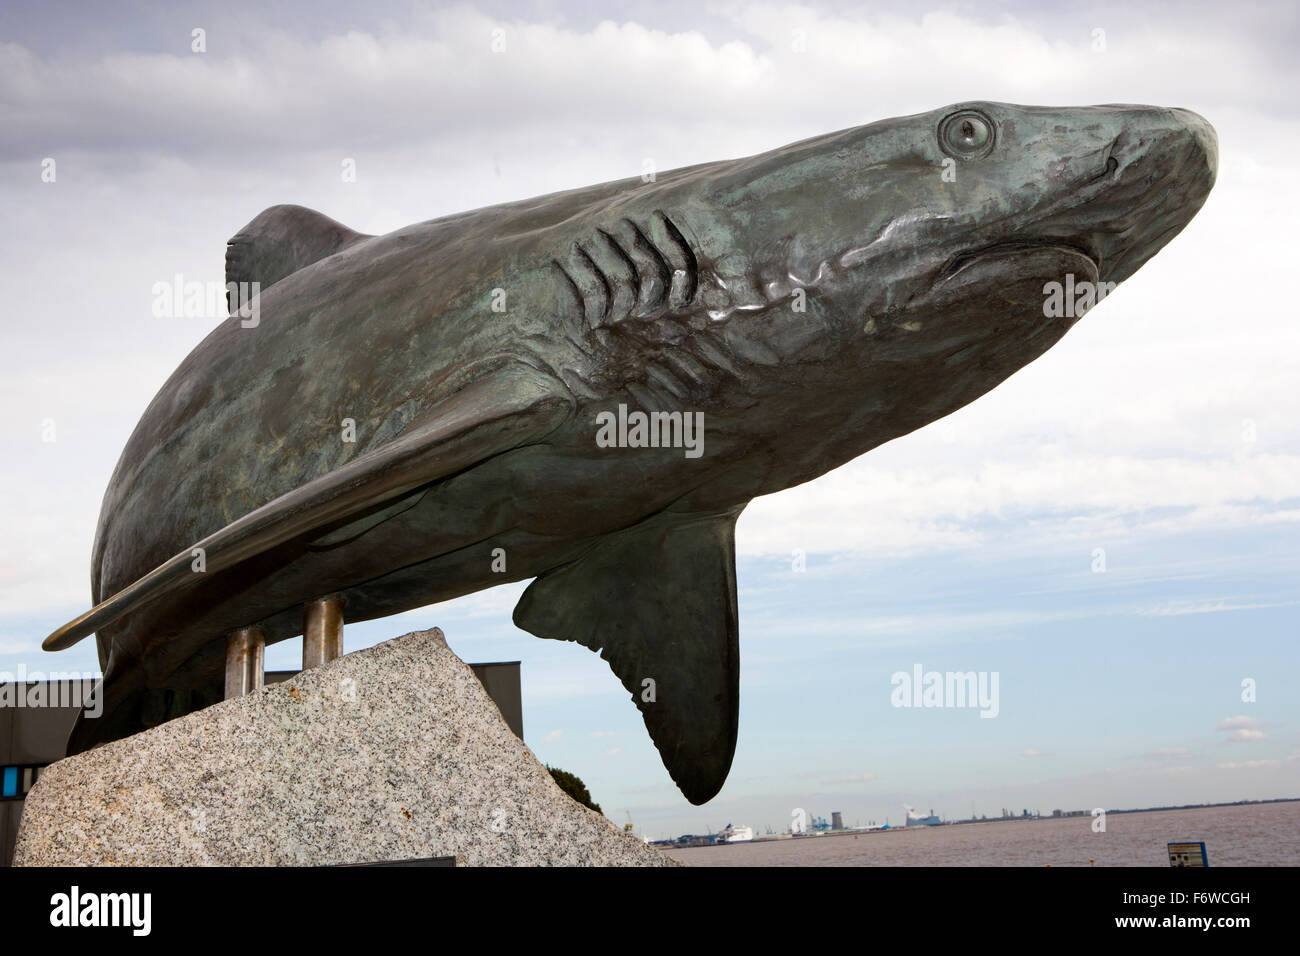 Royaume-uni, Angleterre, dans le Yorkshire, Hull, bronze sculpture de requins à l'extérieur de l'aquarium marin profond Banque D'Images